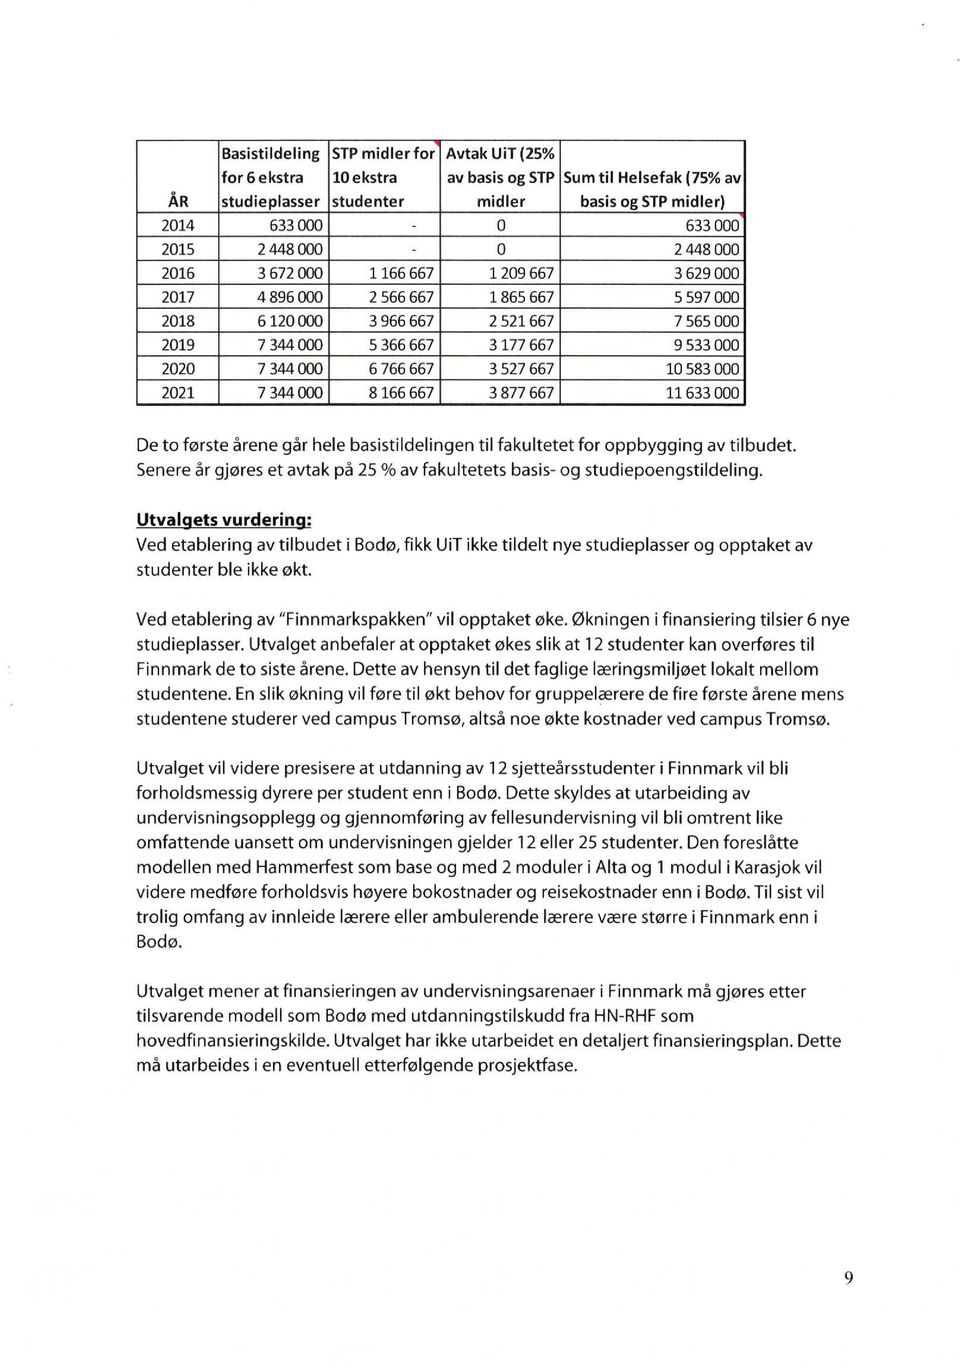 Utval ets vurderin Ved etablering av tilbudet i Bodø, fikk UiT ikke tildelt nye studieplasser og opptaket av studenter ble ikke økt. Ved etablering av "Finnmarkspakken" vil opptaket øke.